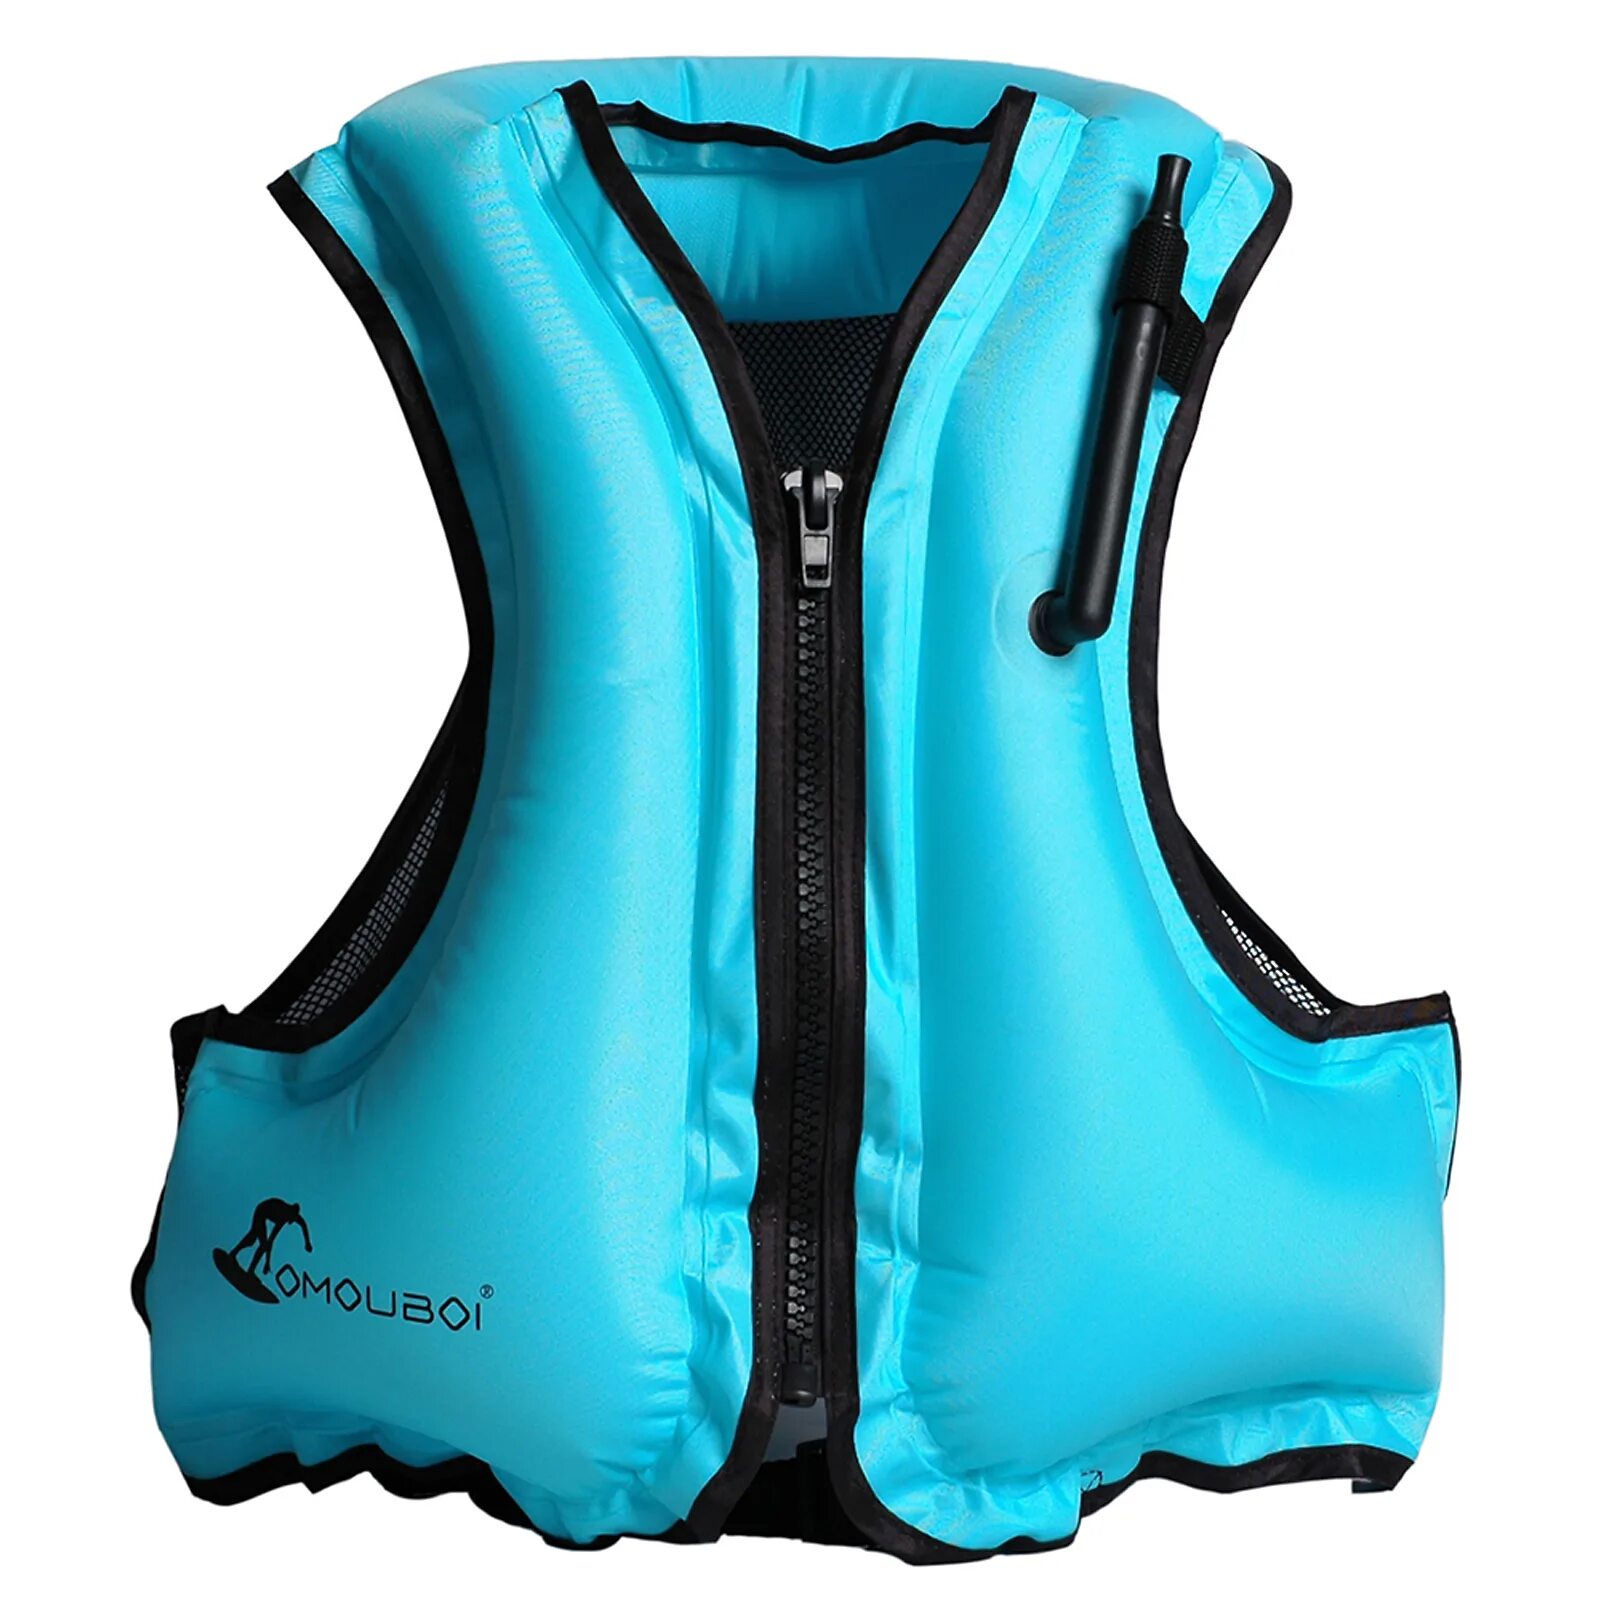 Спасательные жилеты на озон. Жилет спасательный Life Jacket. Swim Vest жилет Blue. Спасательный надувной жилет т3 ФМК. Плавательный жилет надувной Size l_ SL-37/sy-a0899.